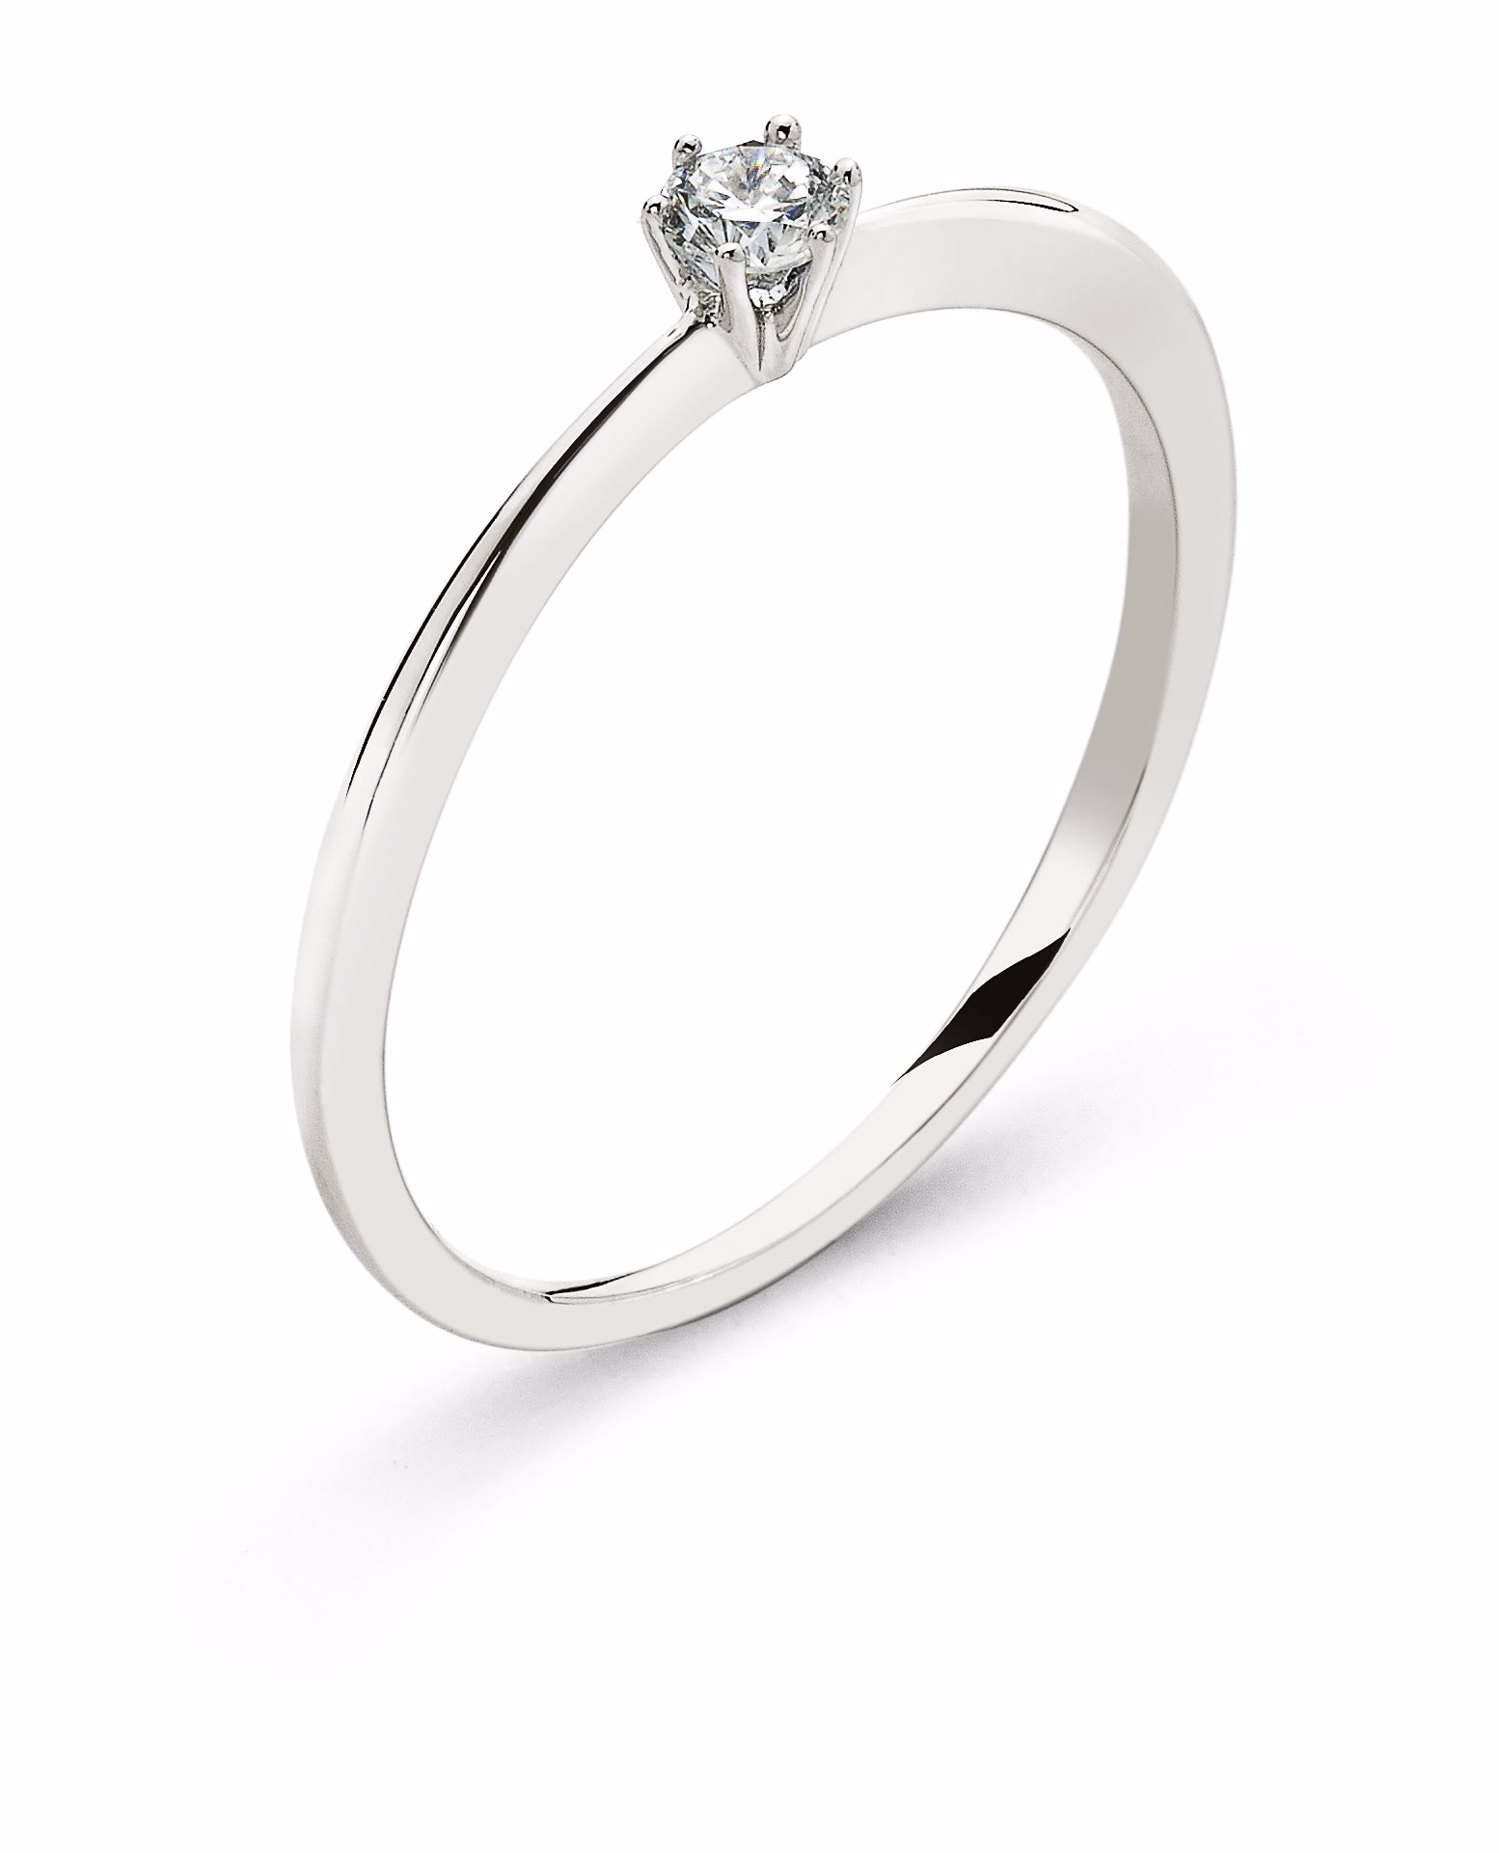 AURONOS Prestige Solitär Ring Weissgold 18K Diamant 0.10ct